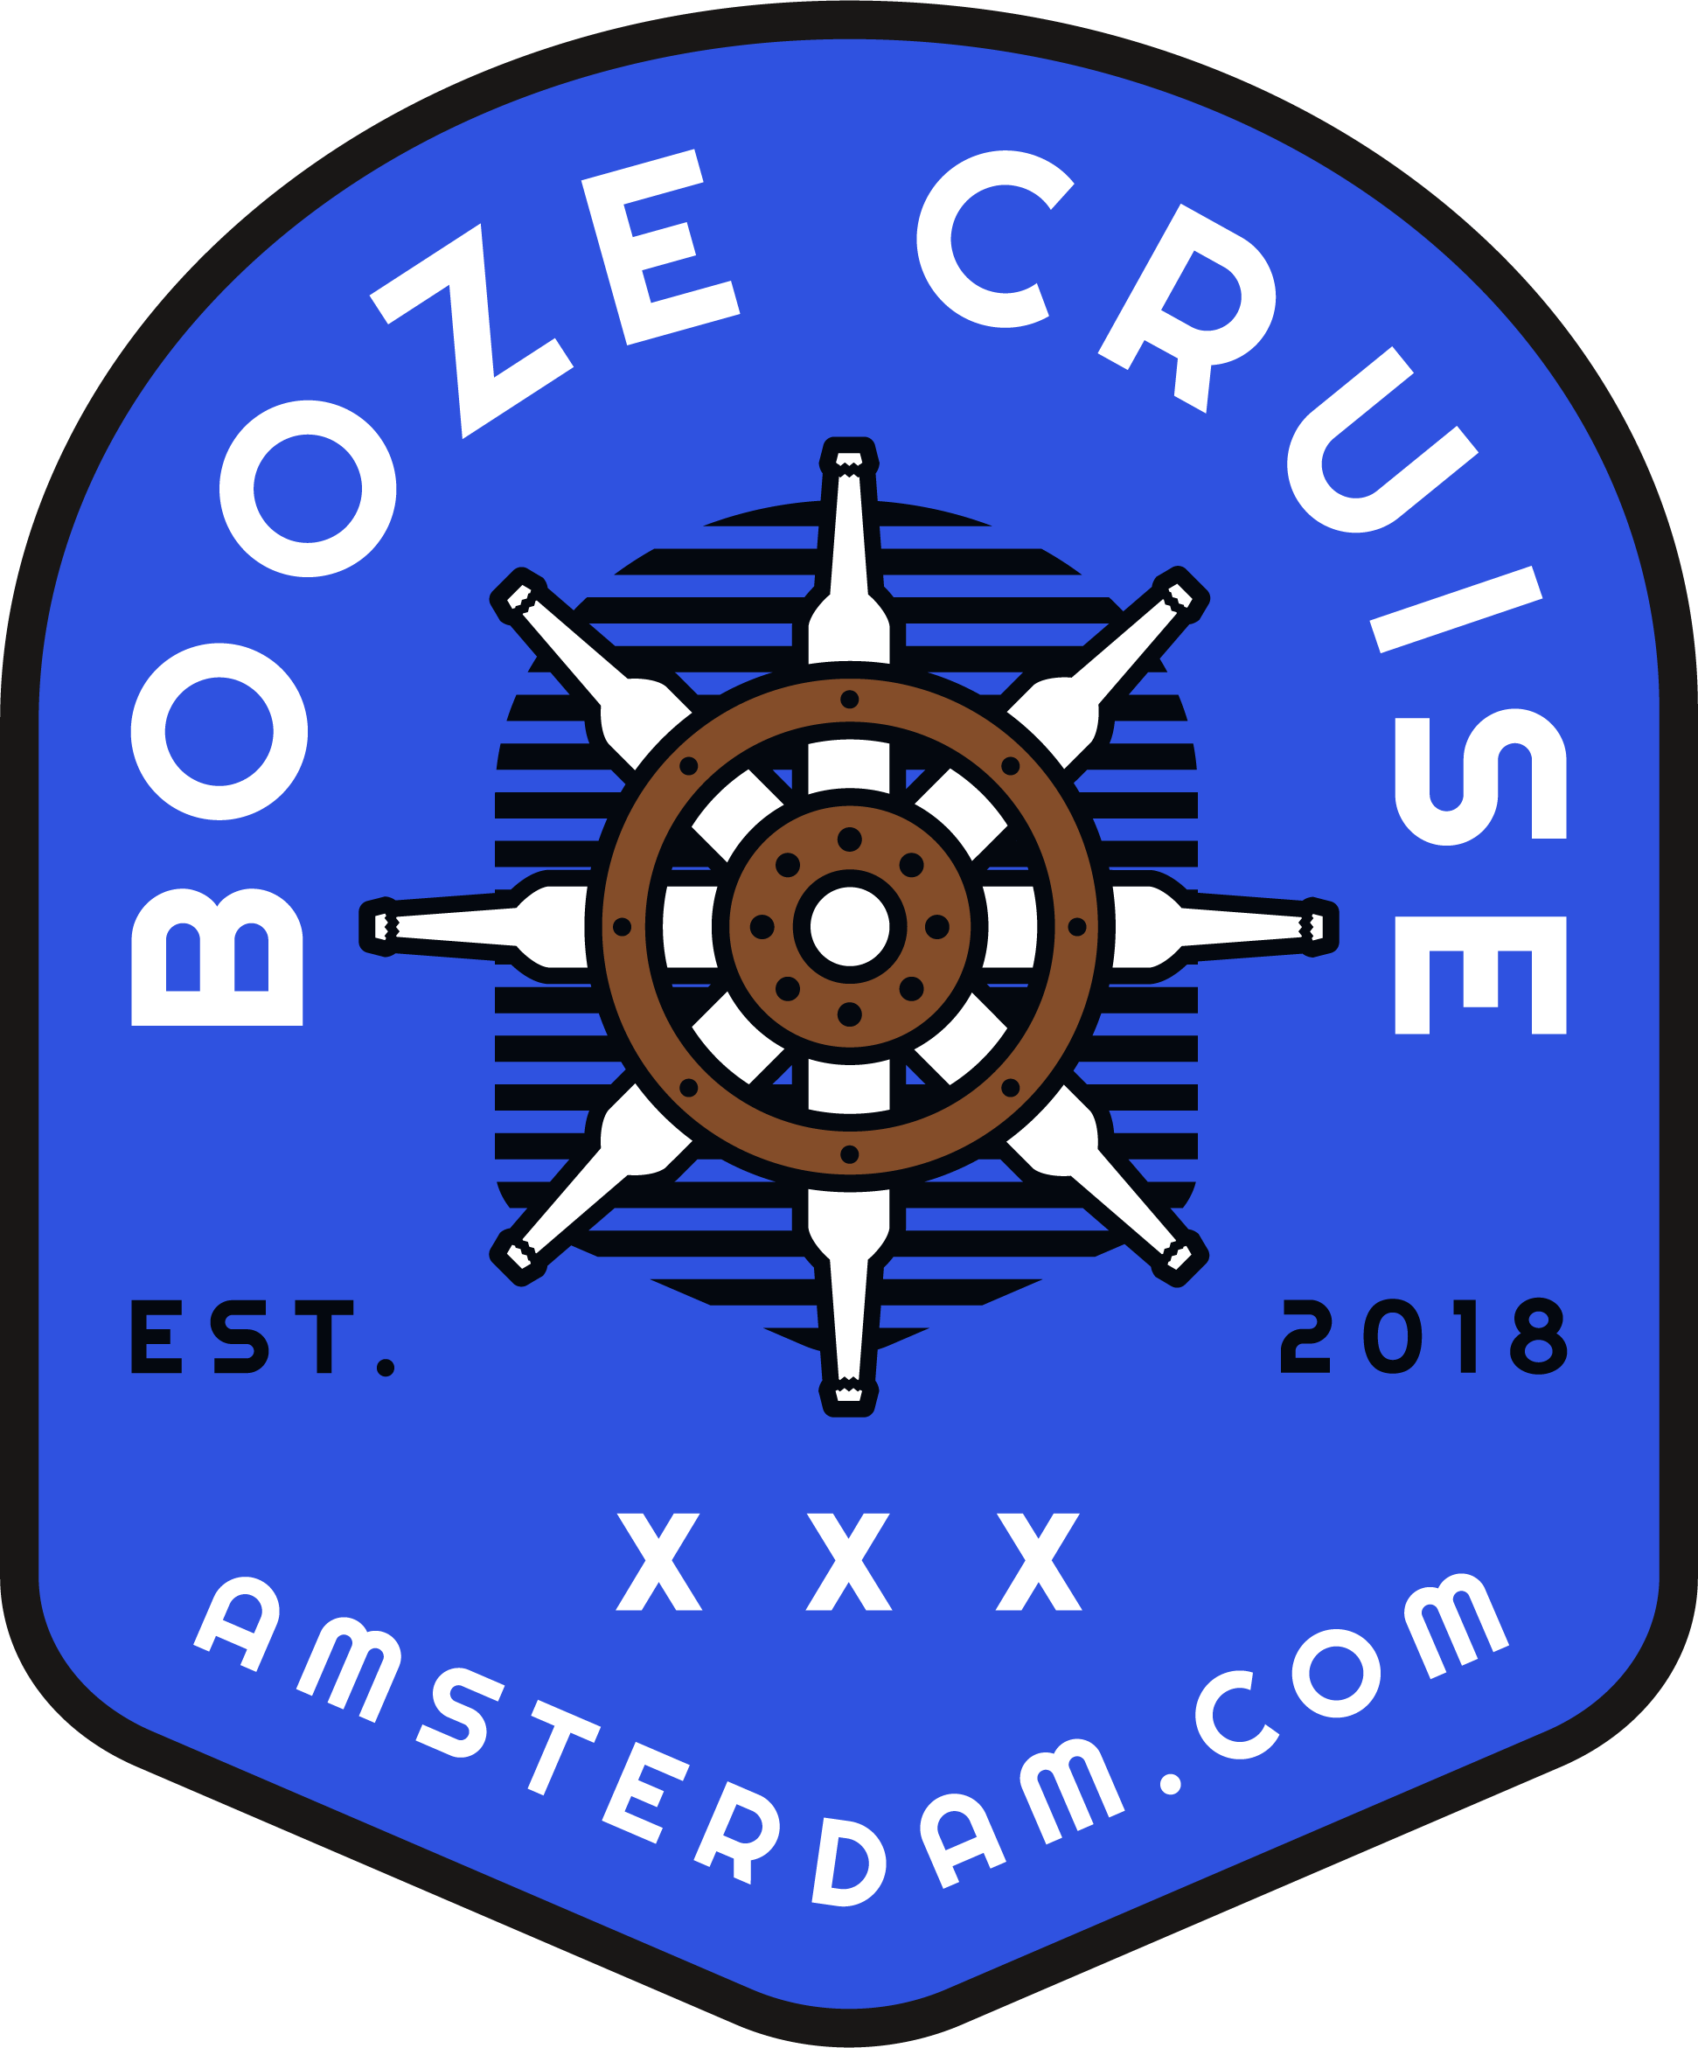 booze cruise logo